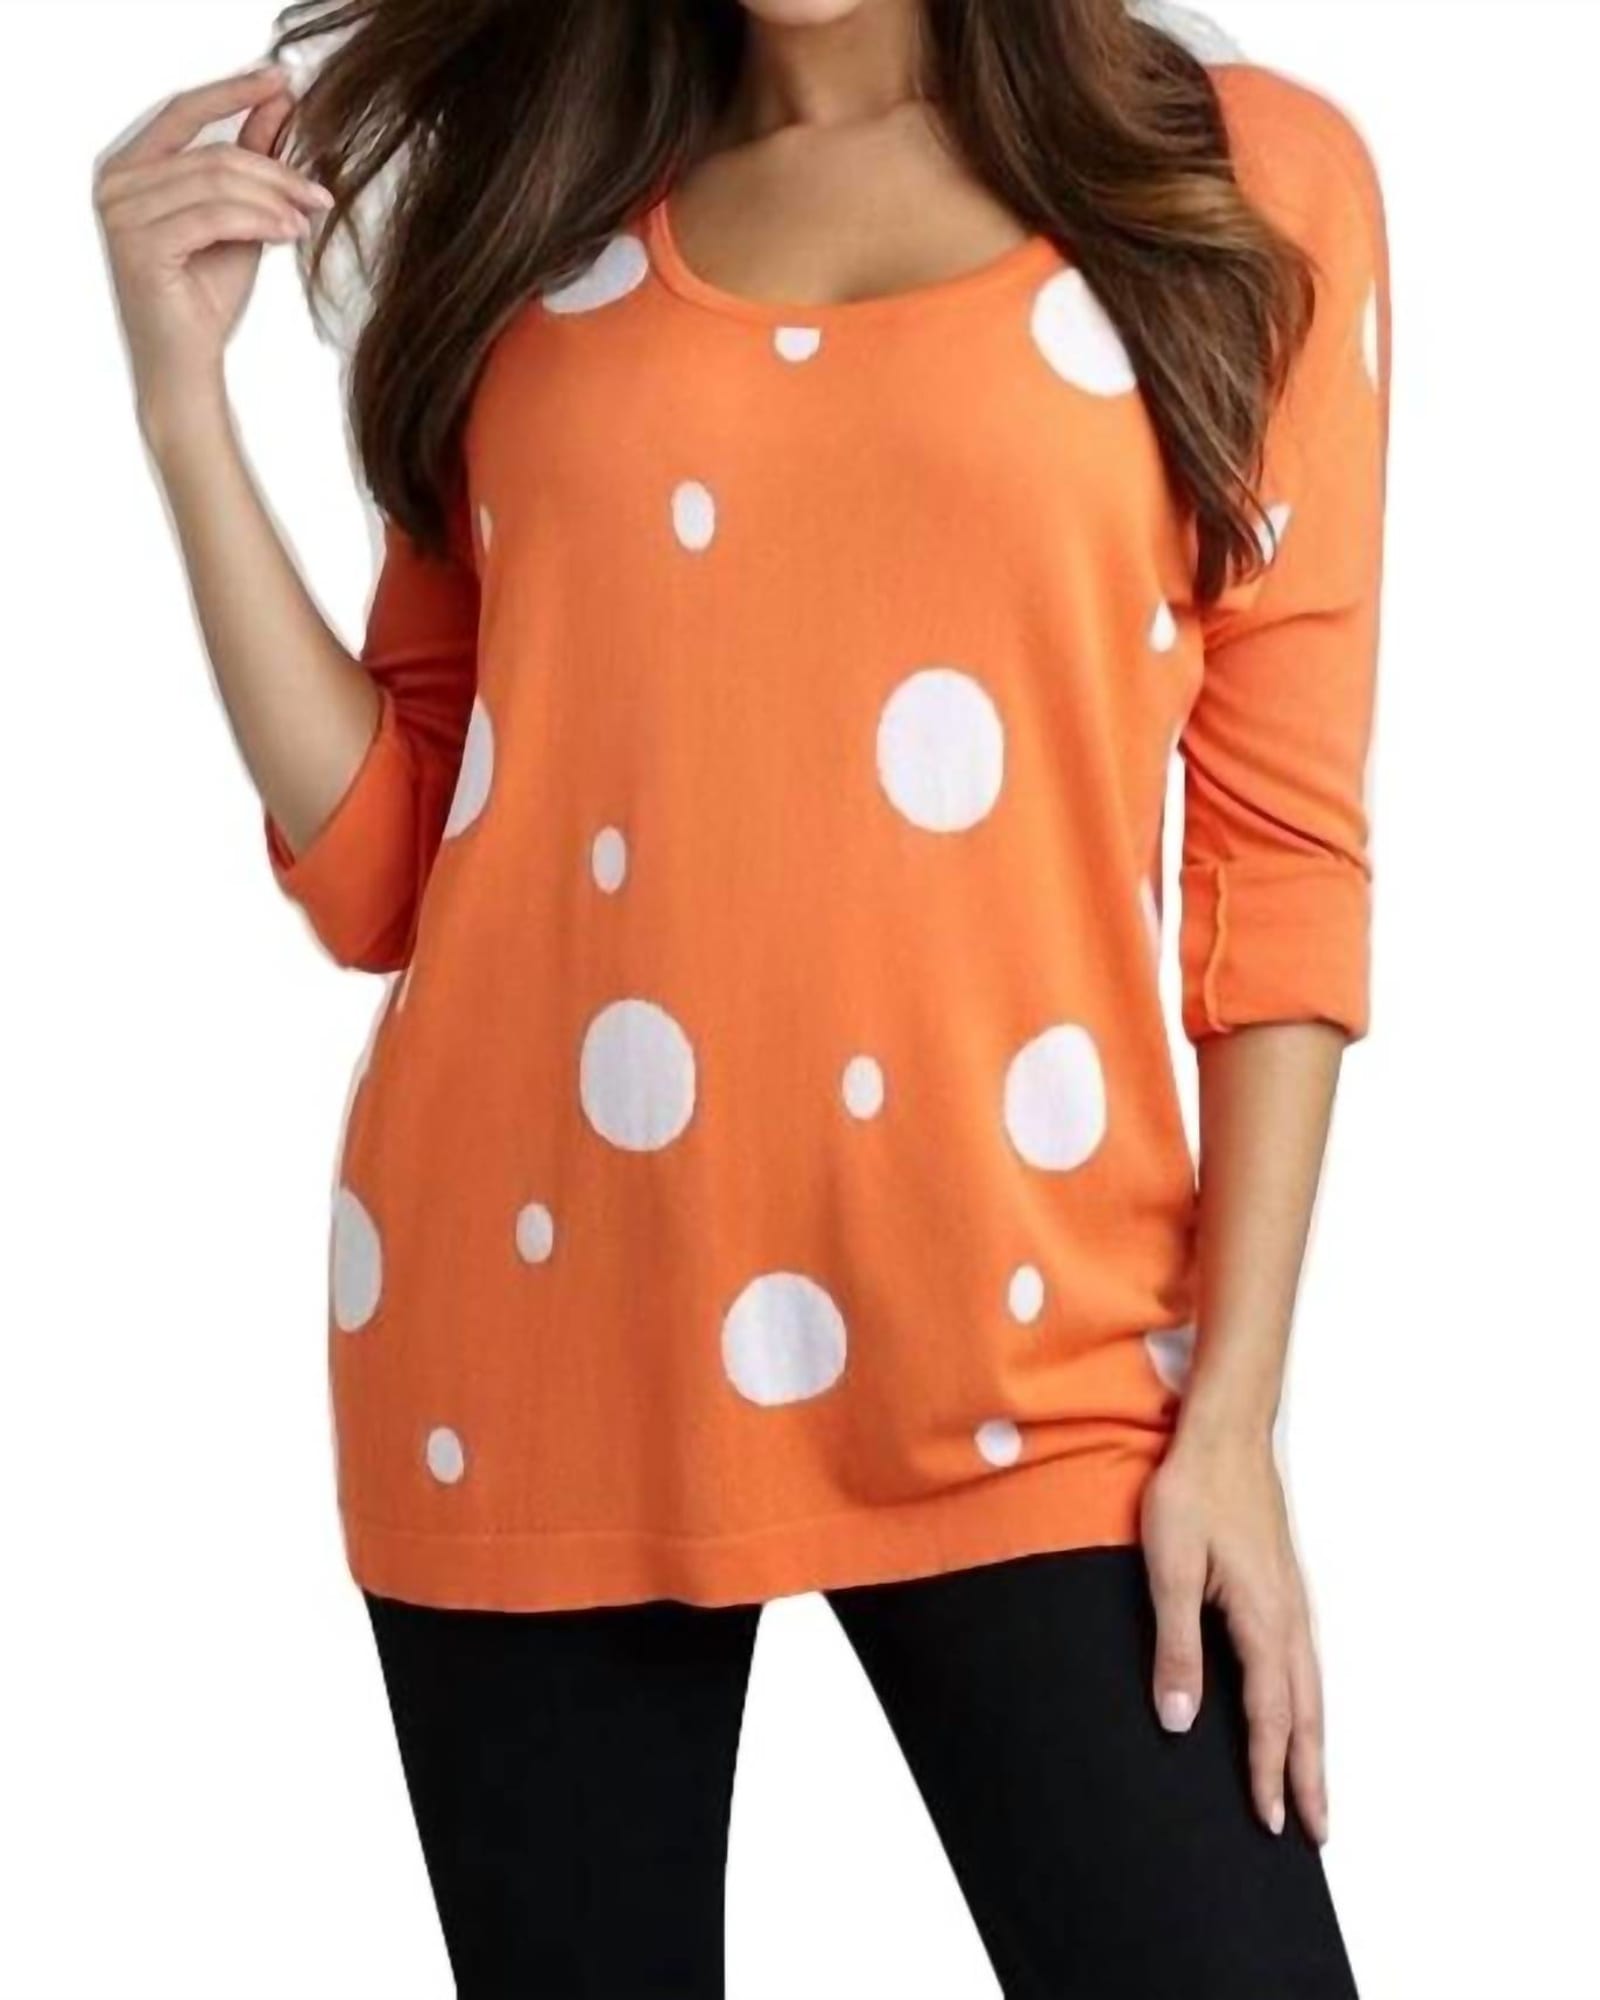 Bubbles Graphic Sweater in Orange/White | Orange/White